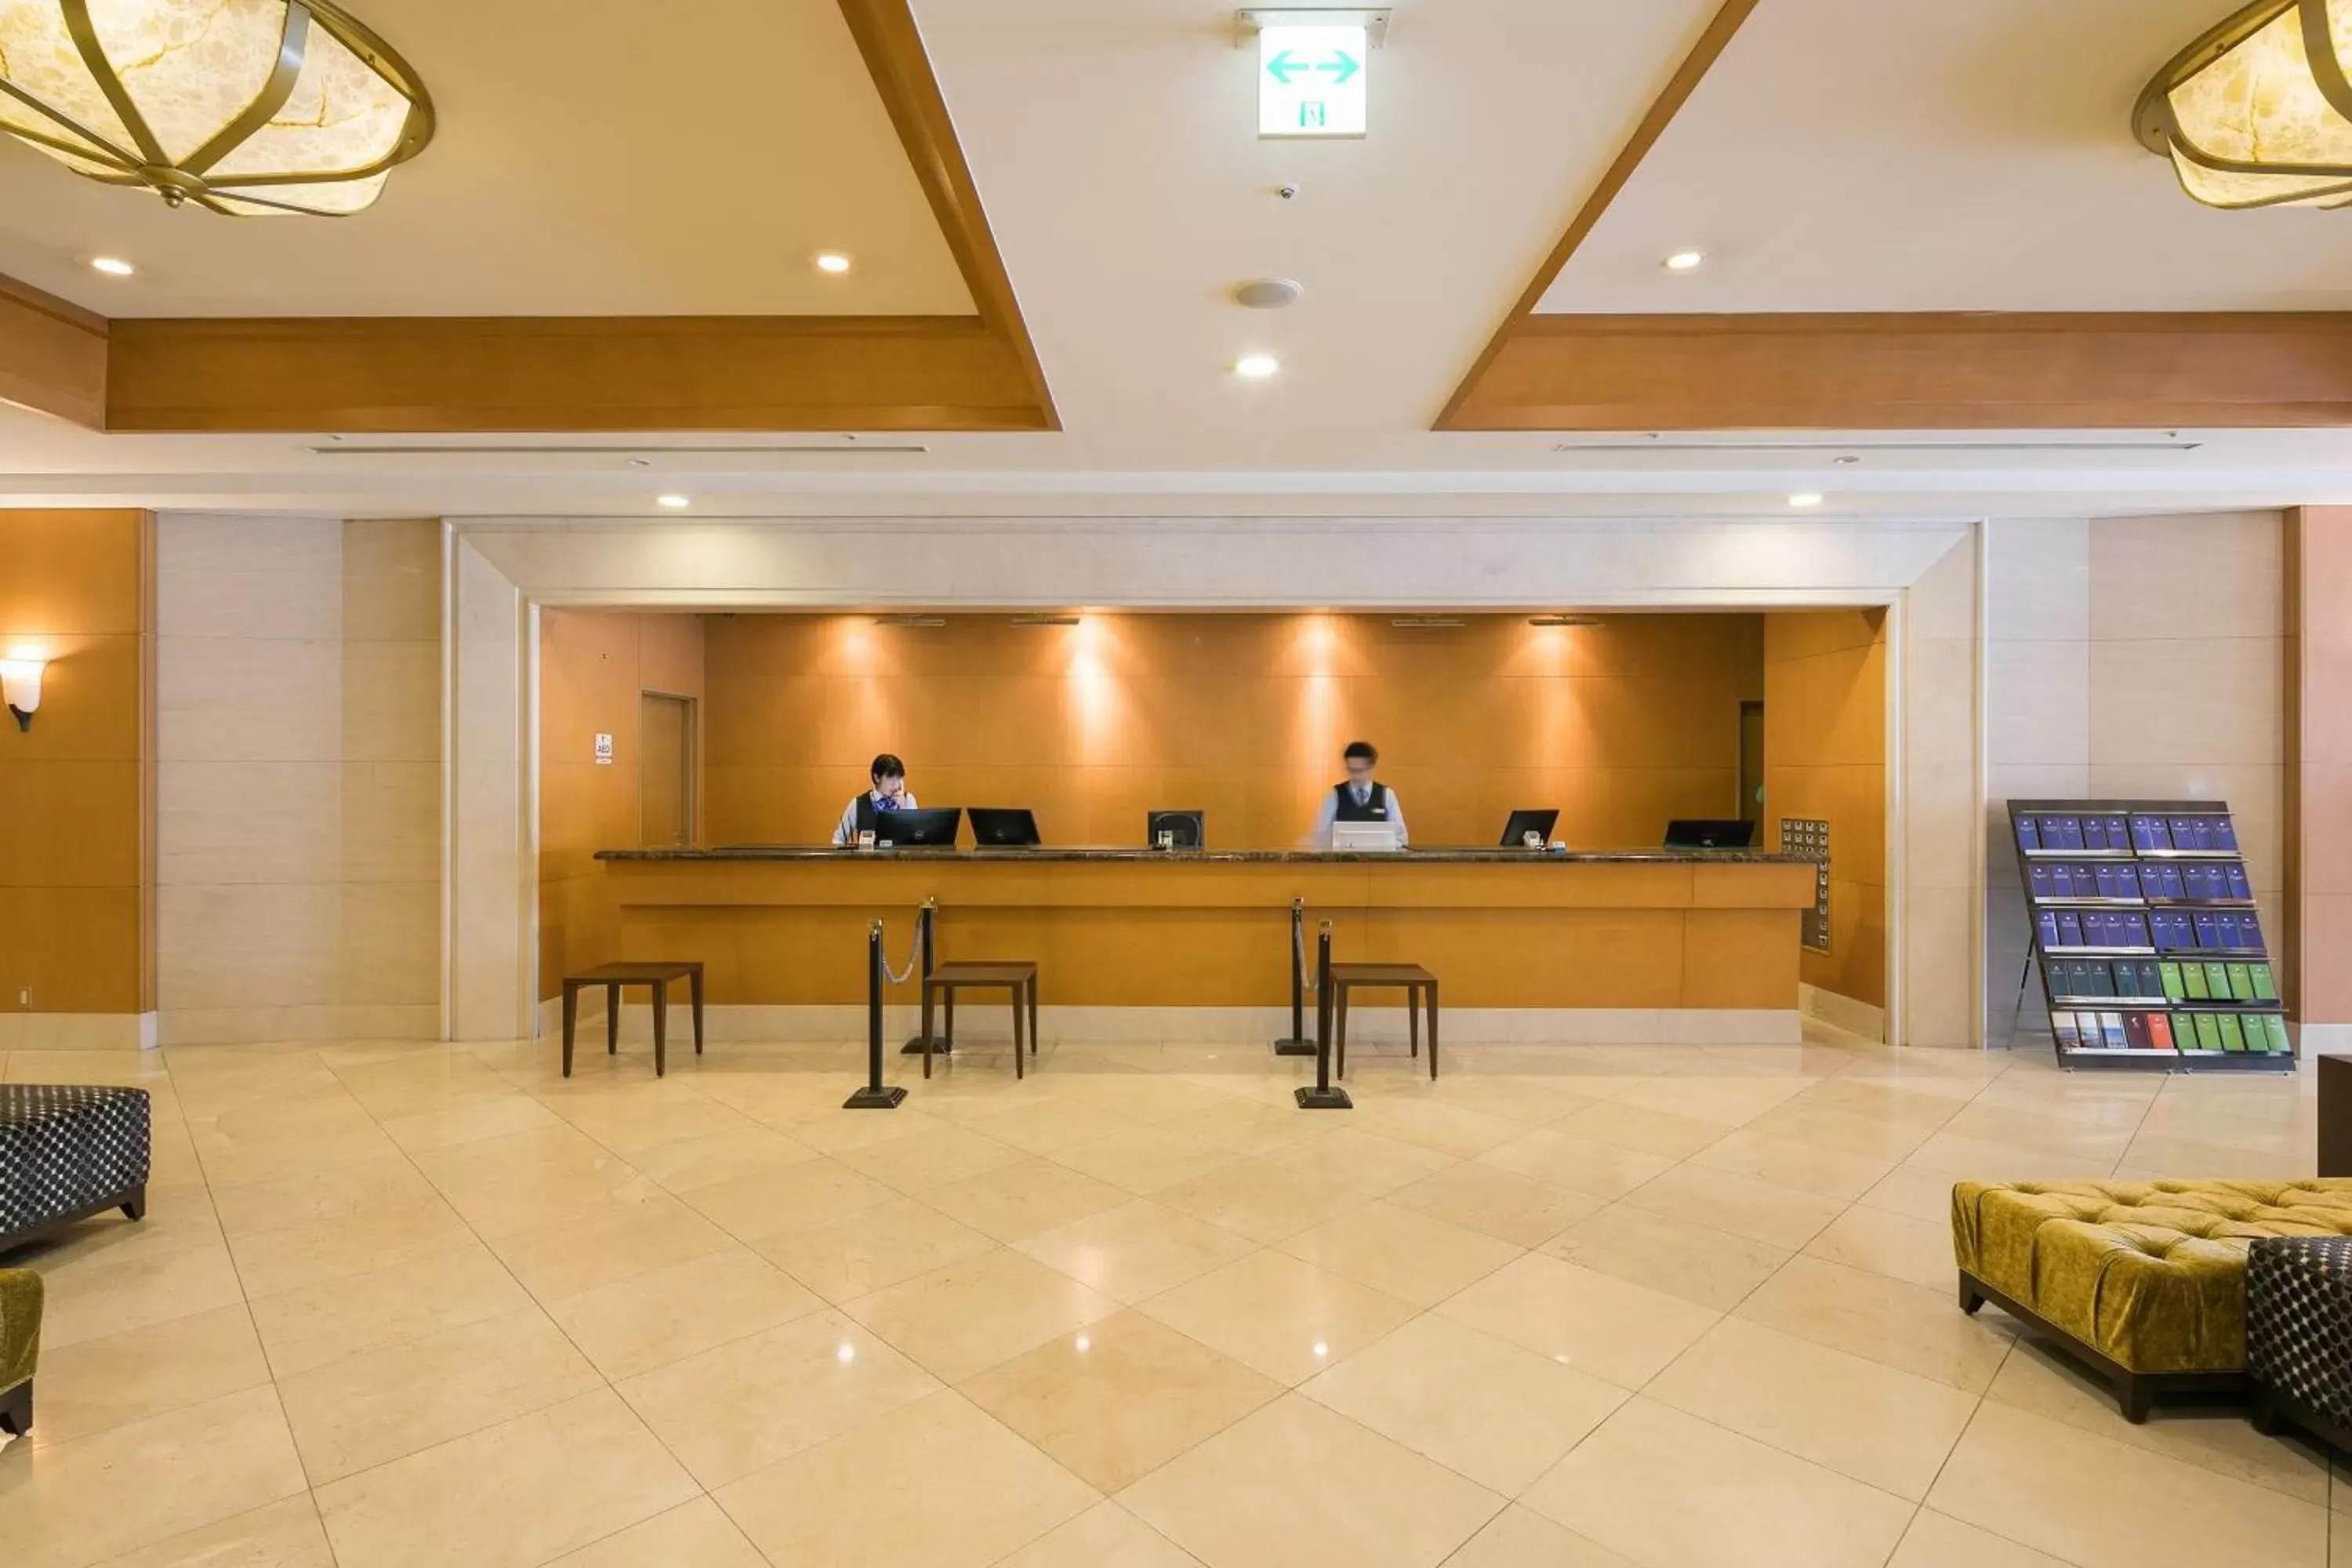 Lobby or reception, Lobby/Reception in HOTEL MYSTAYS Matsuyama